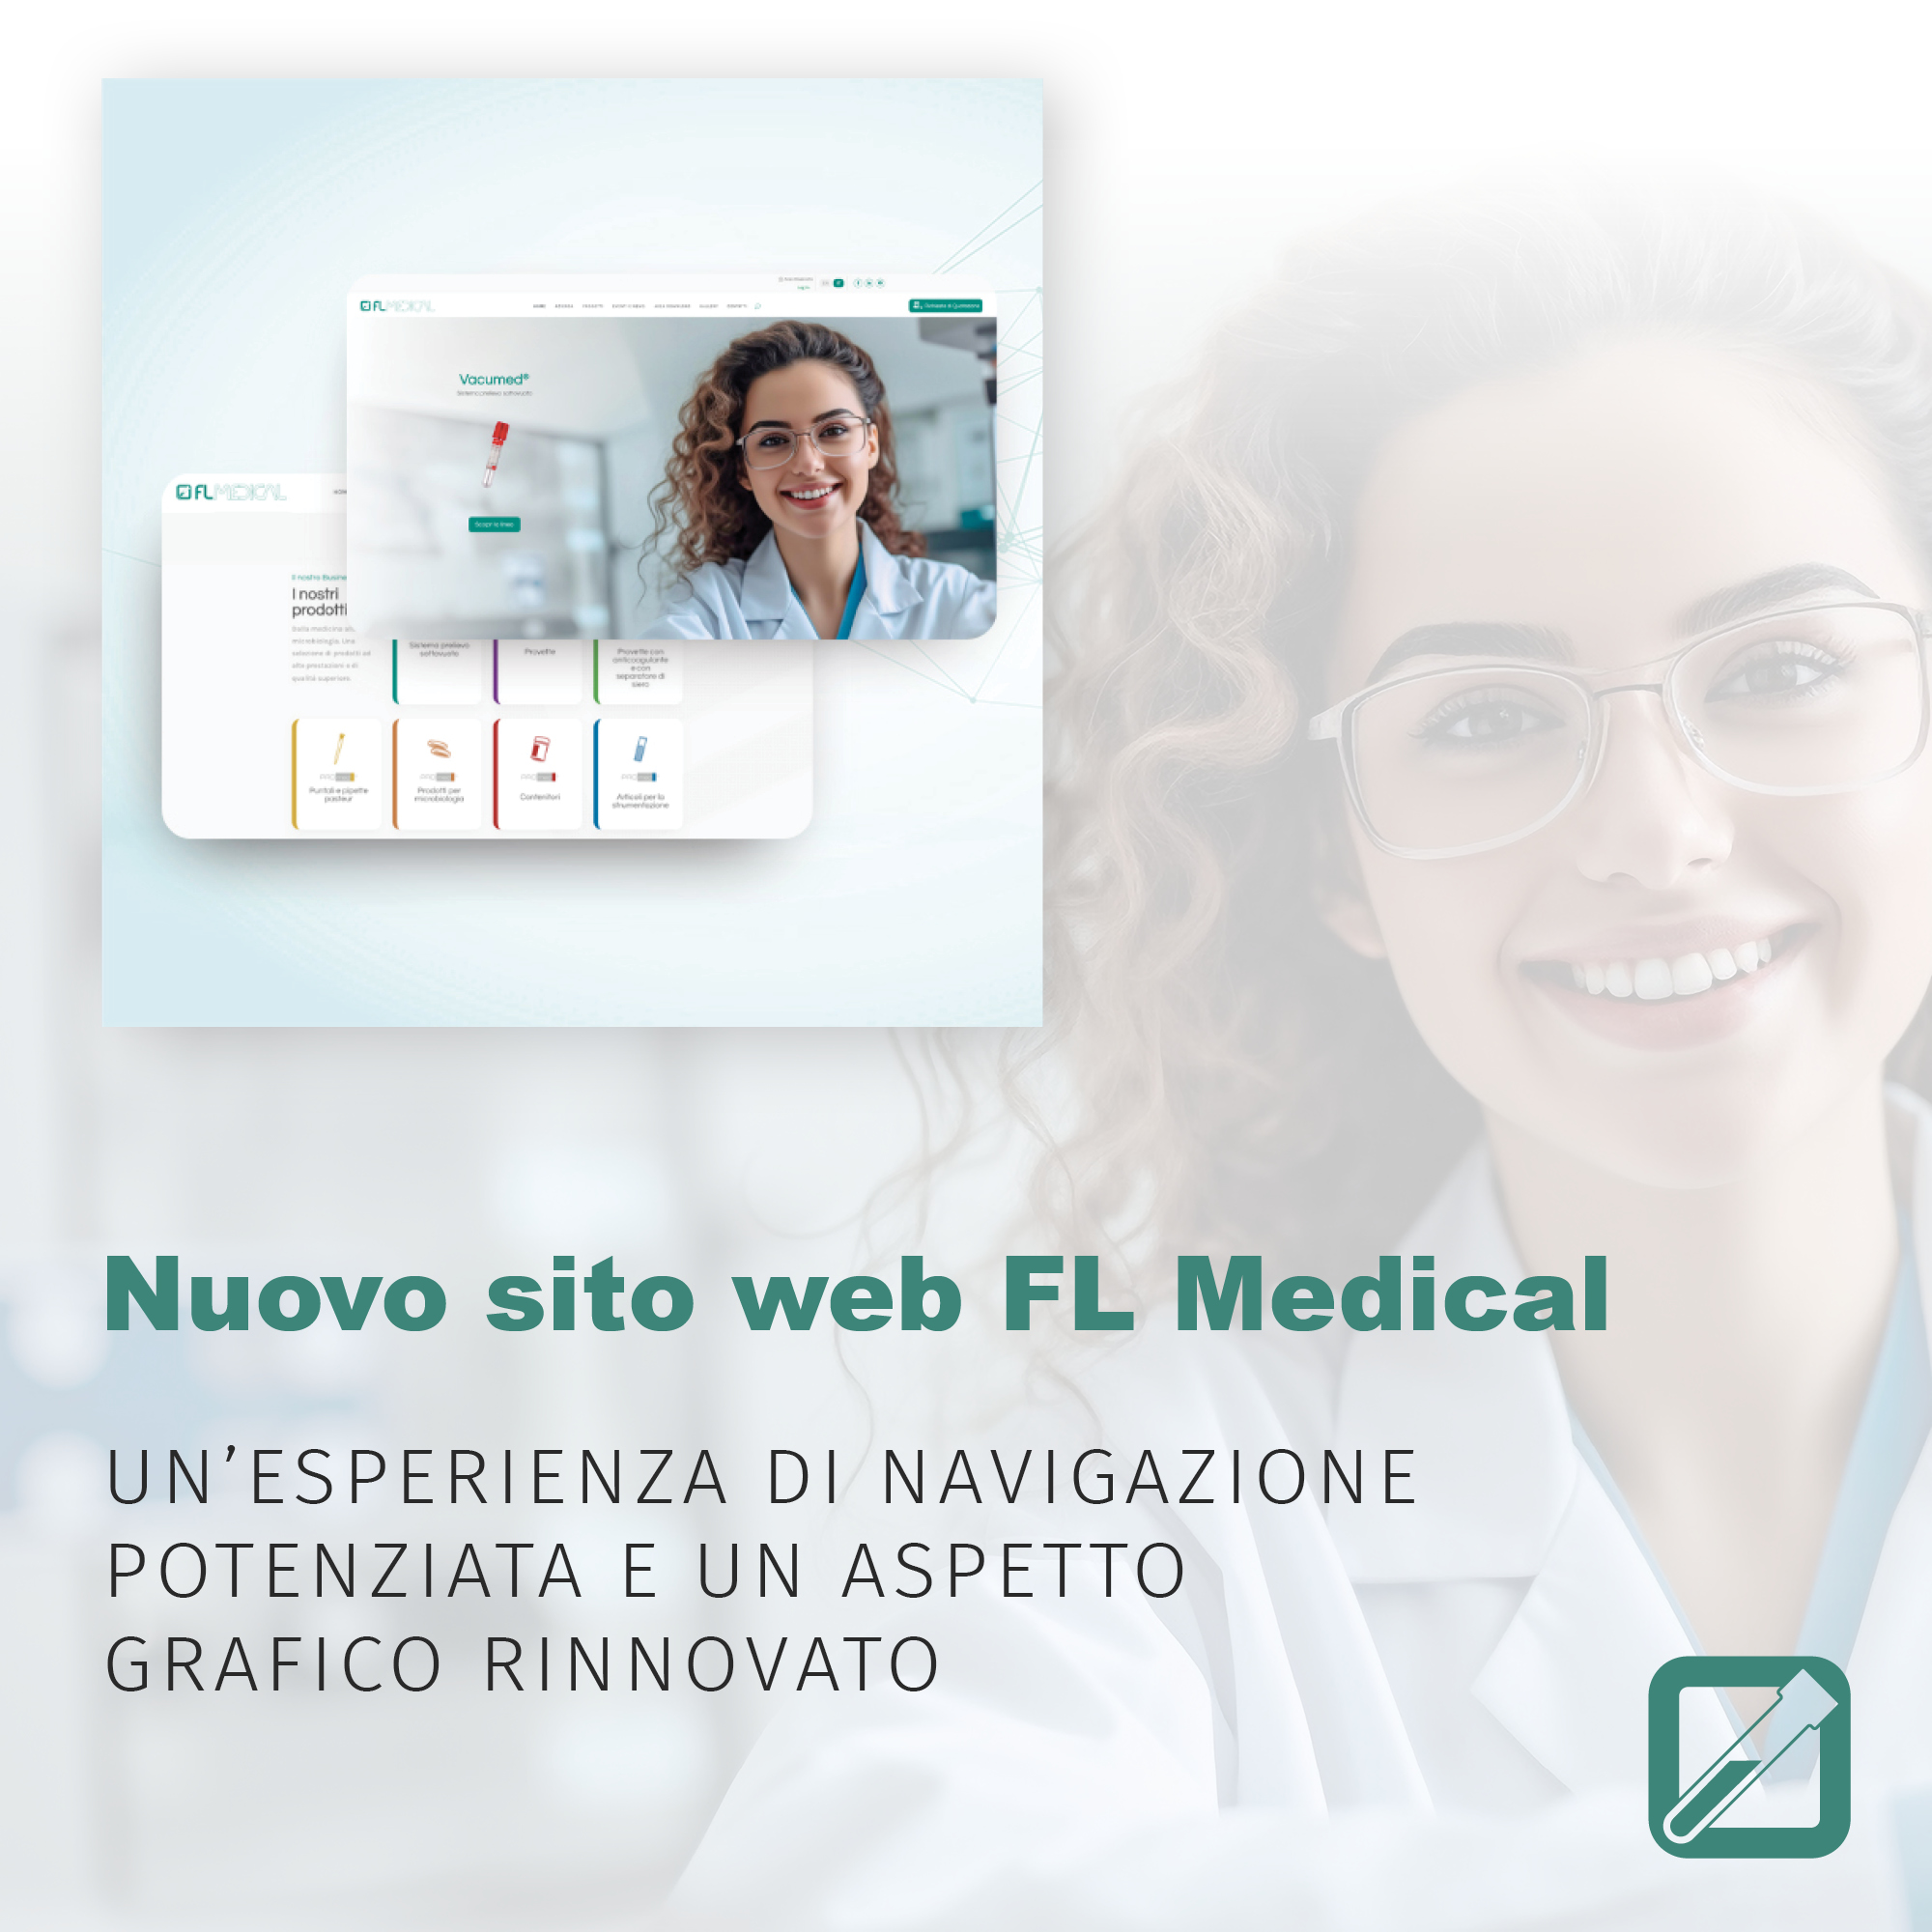 FL Medical: nuovo sito web